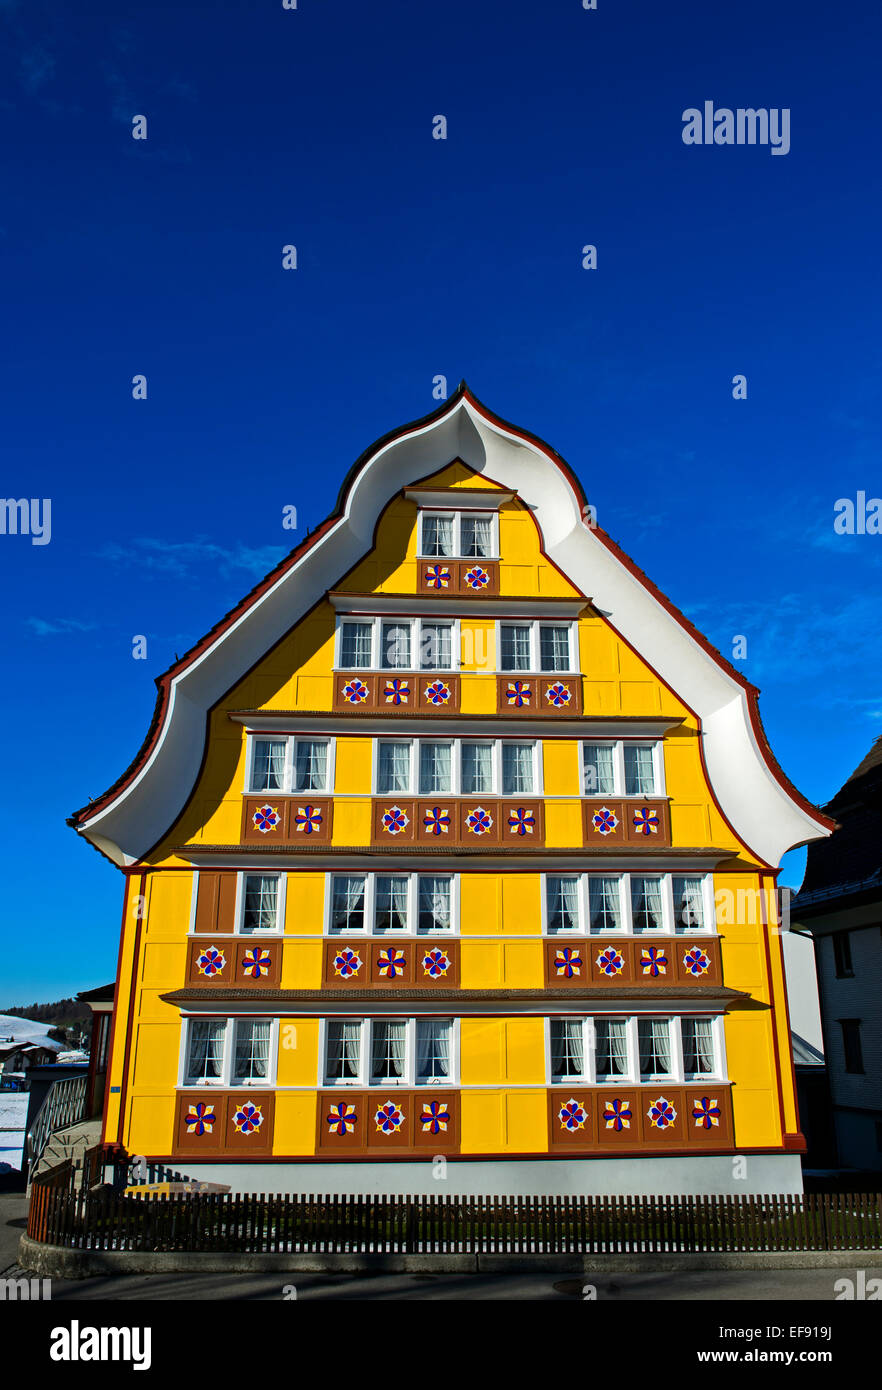 Haus mit einem gewölbten dreieckigen Giebel im Appenzeller Stil, Appenzell, Appenzell, Schweiz Stockfoto